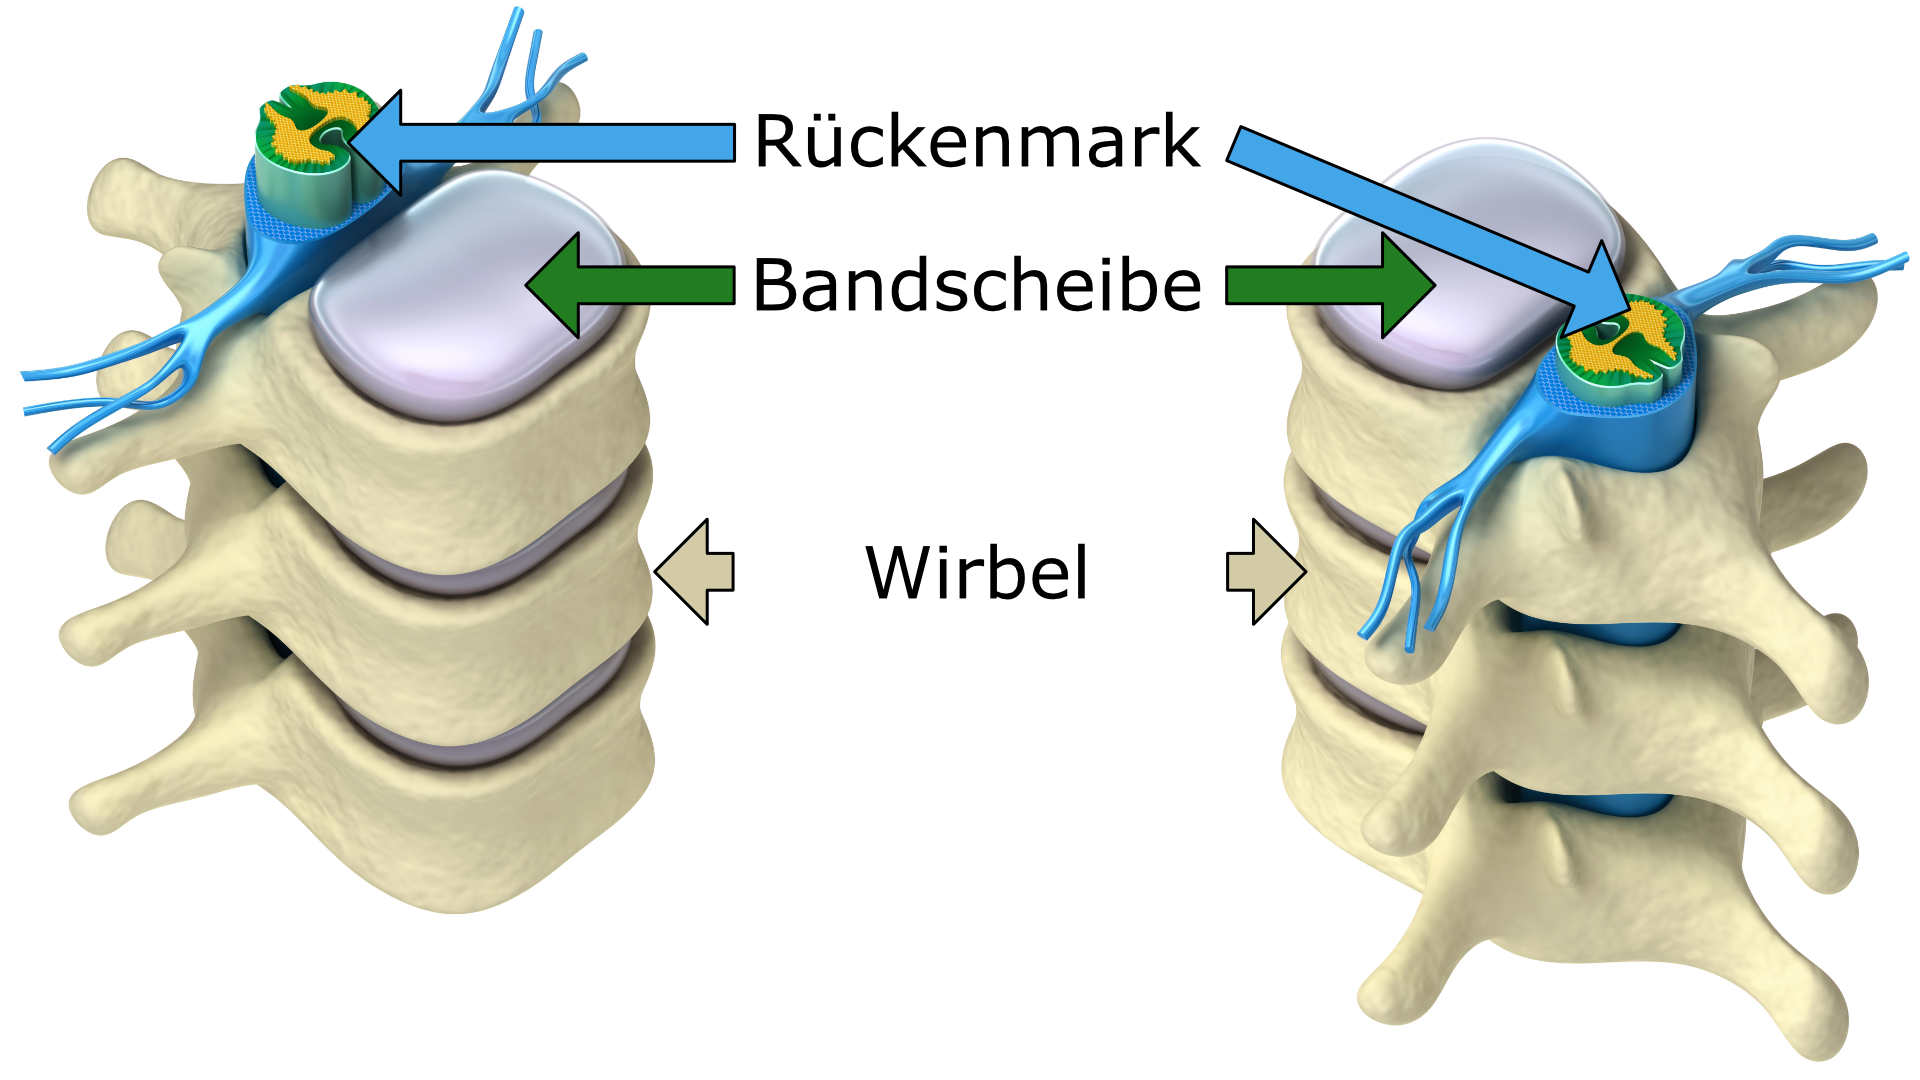 Anatomische Darstellung der Wirbelsäule mit Wirbelnd, Rückenmark und Bandscheiben